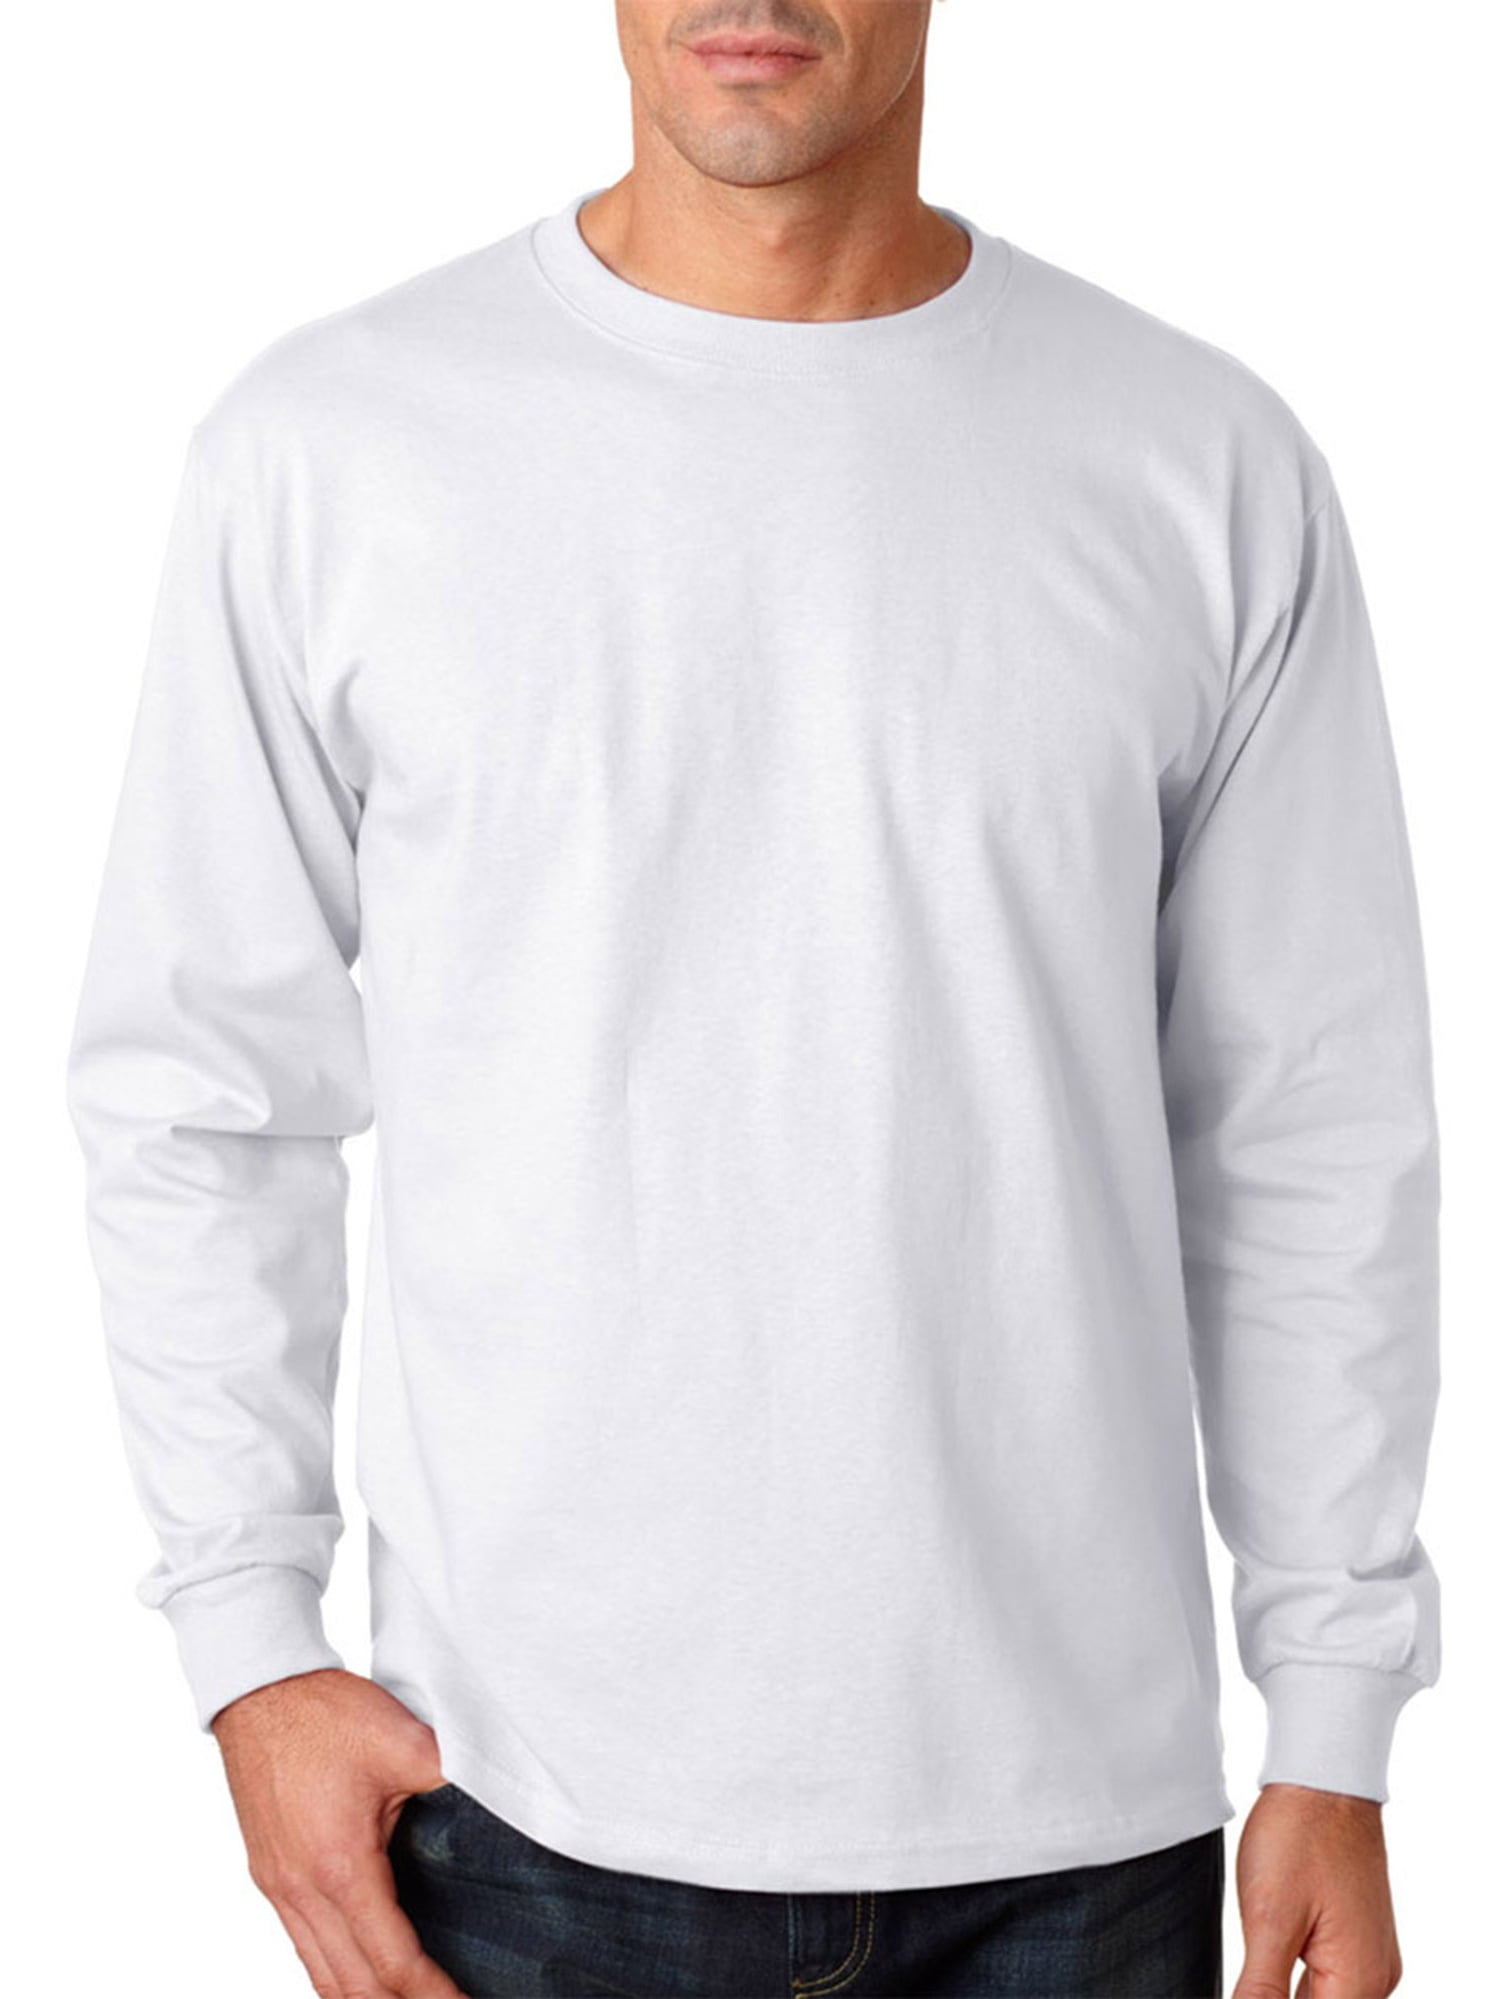 JERZEES - Jerzees Men's Hiden Long Sleeve T Shirt - Walmart.com ...